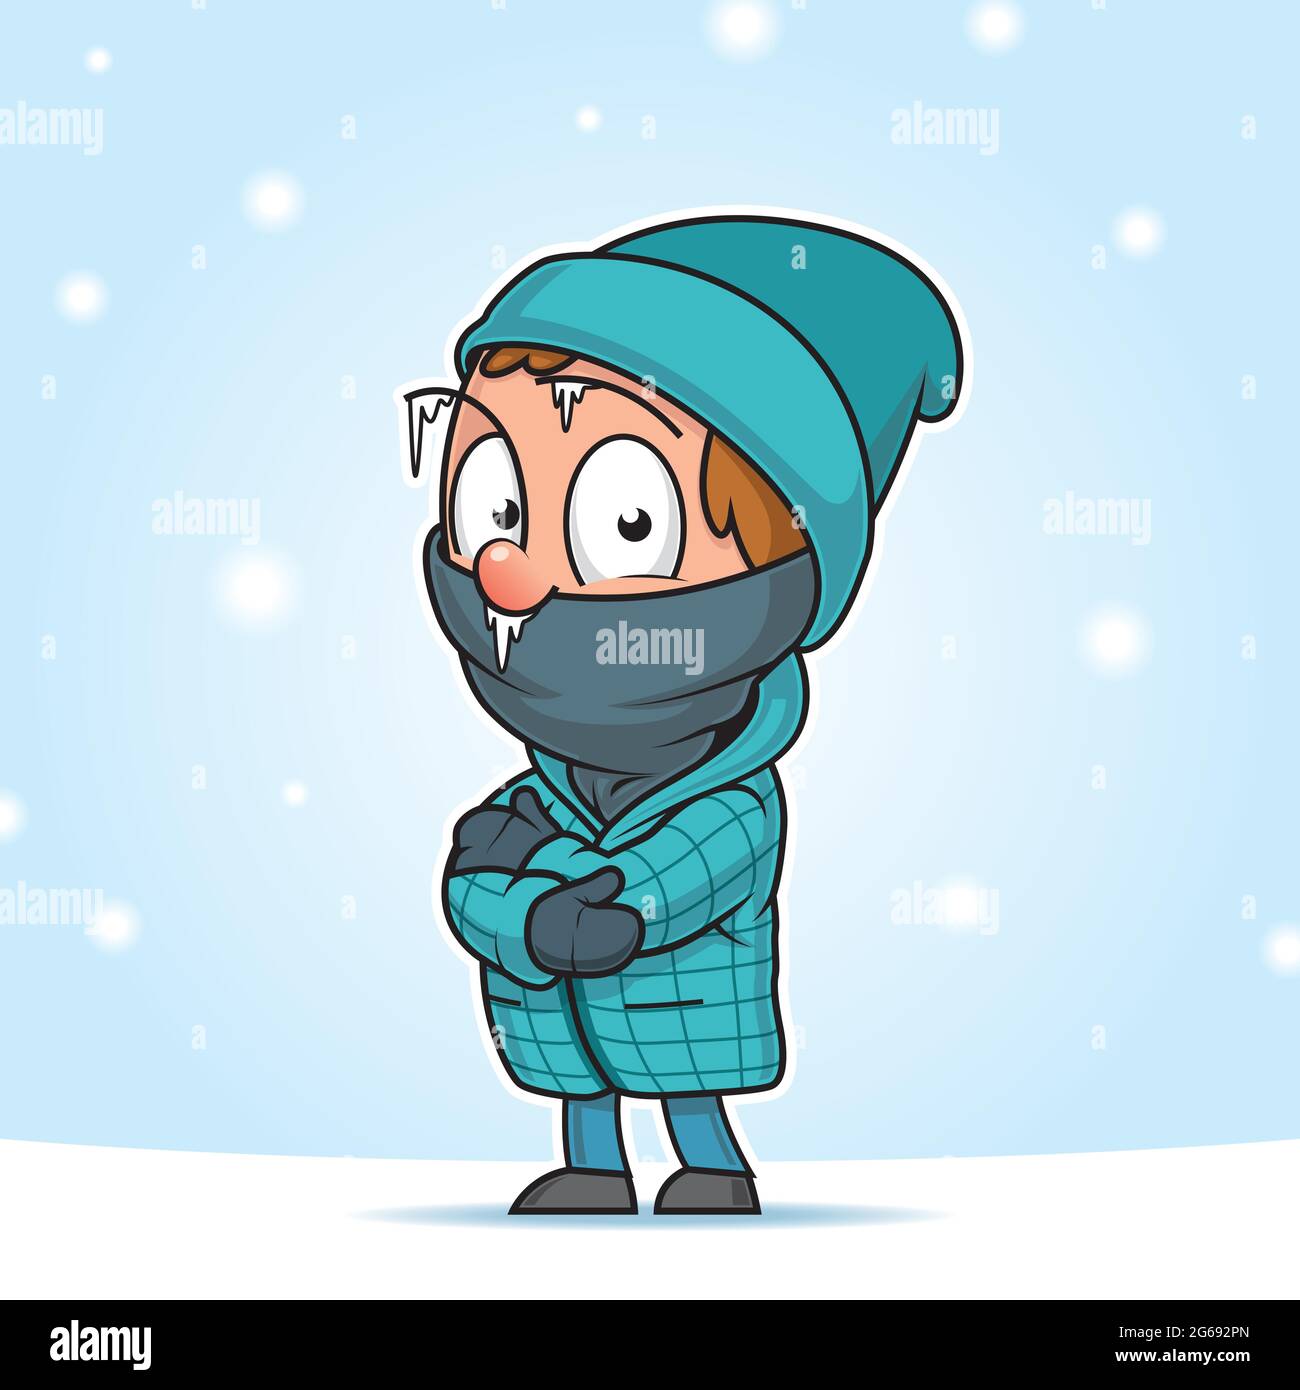 Cartoon-Illustration eines Mannes in der Mitte eines Schneefalls, immer kalt Stock Vektor